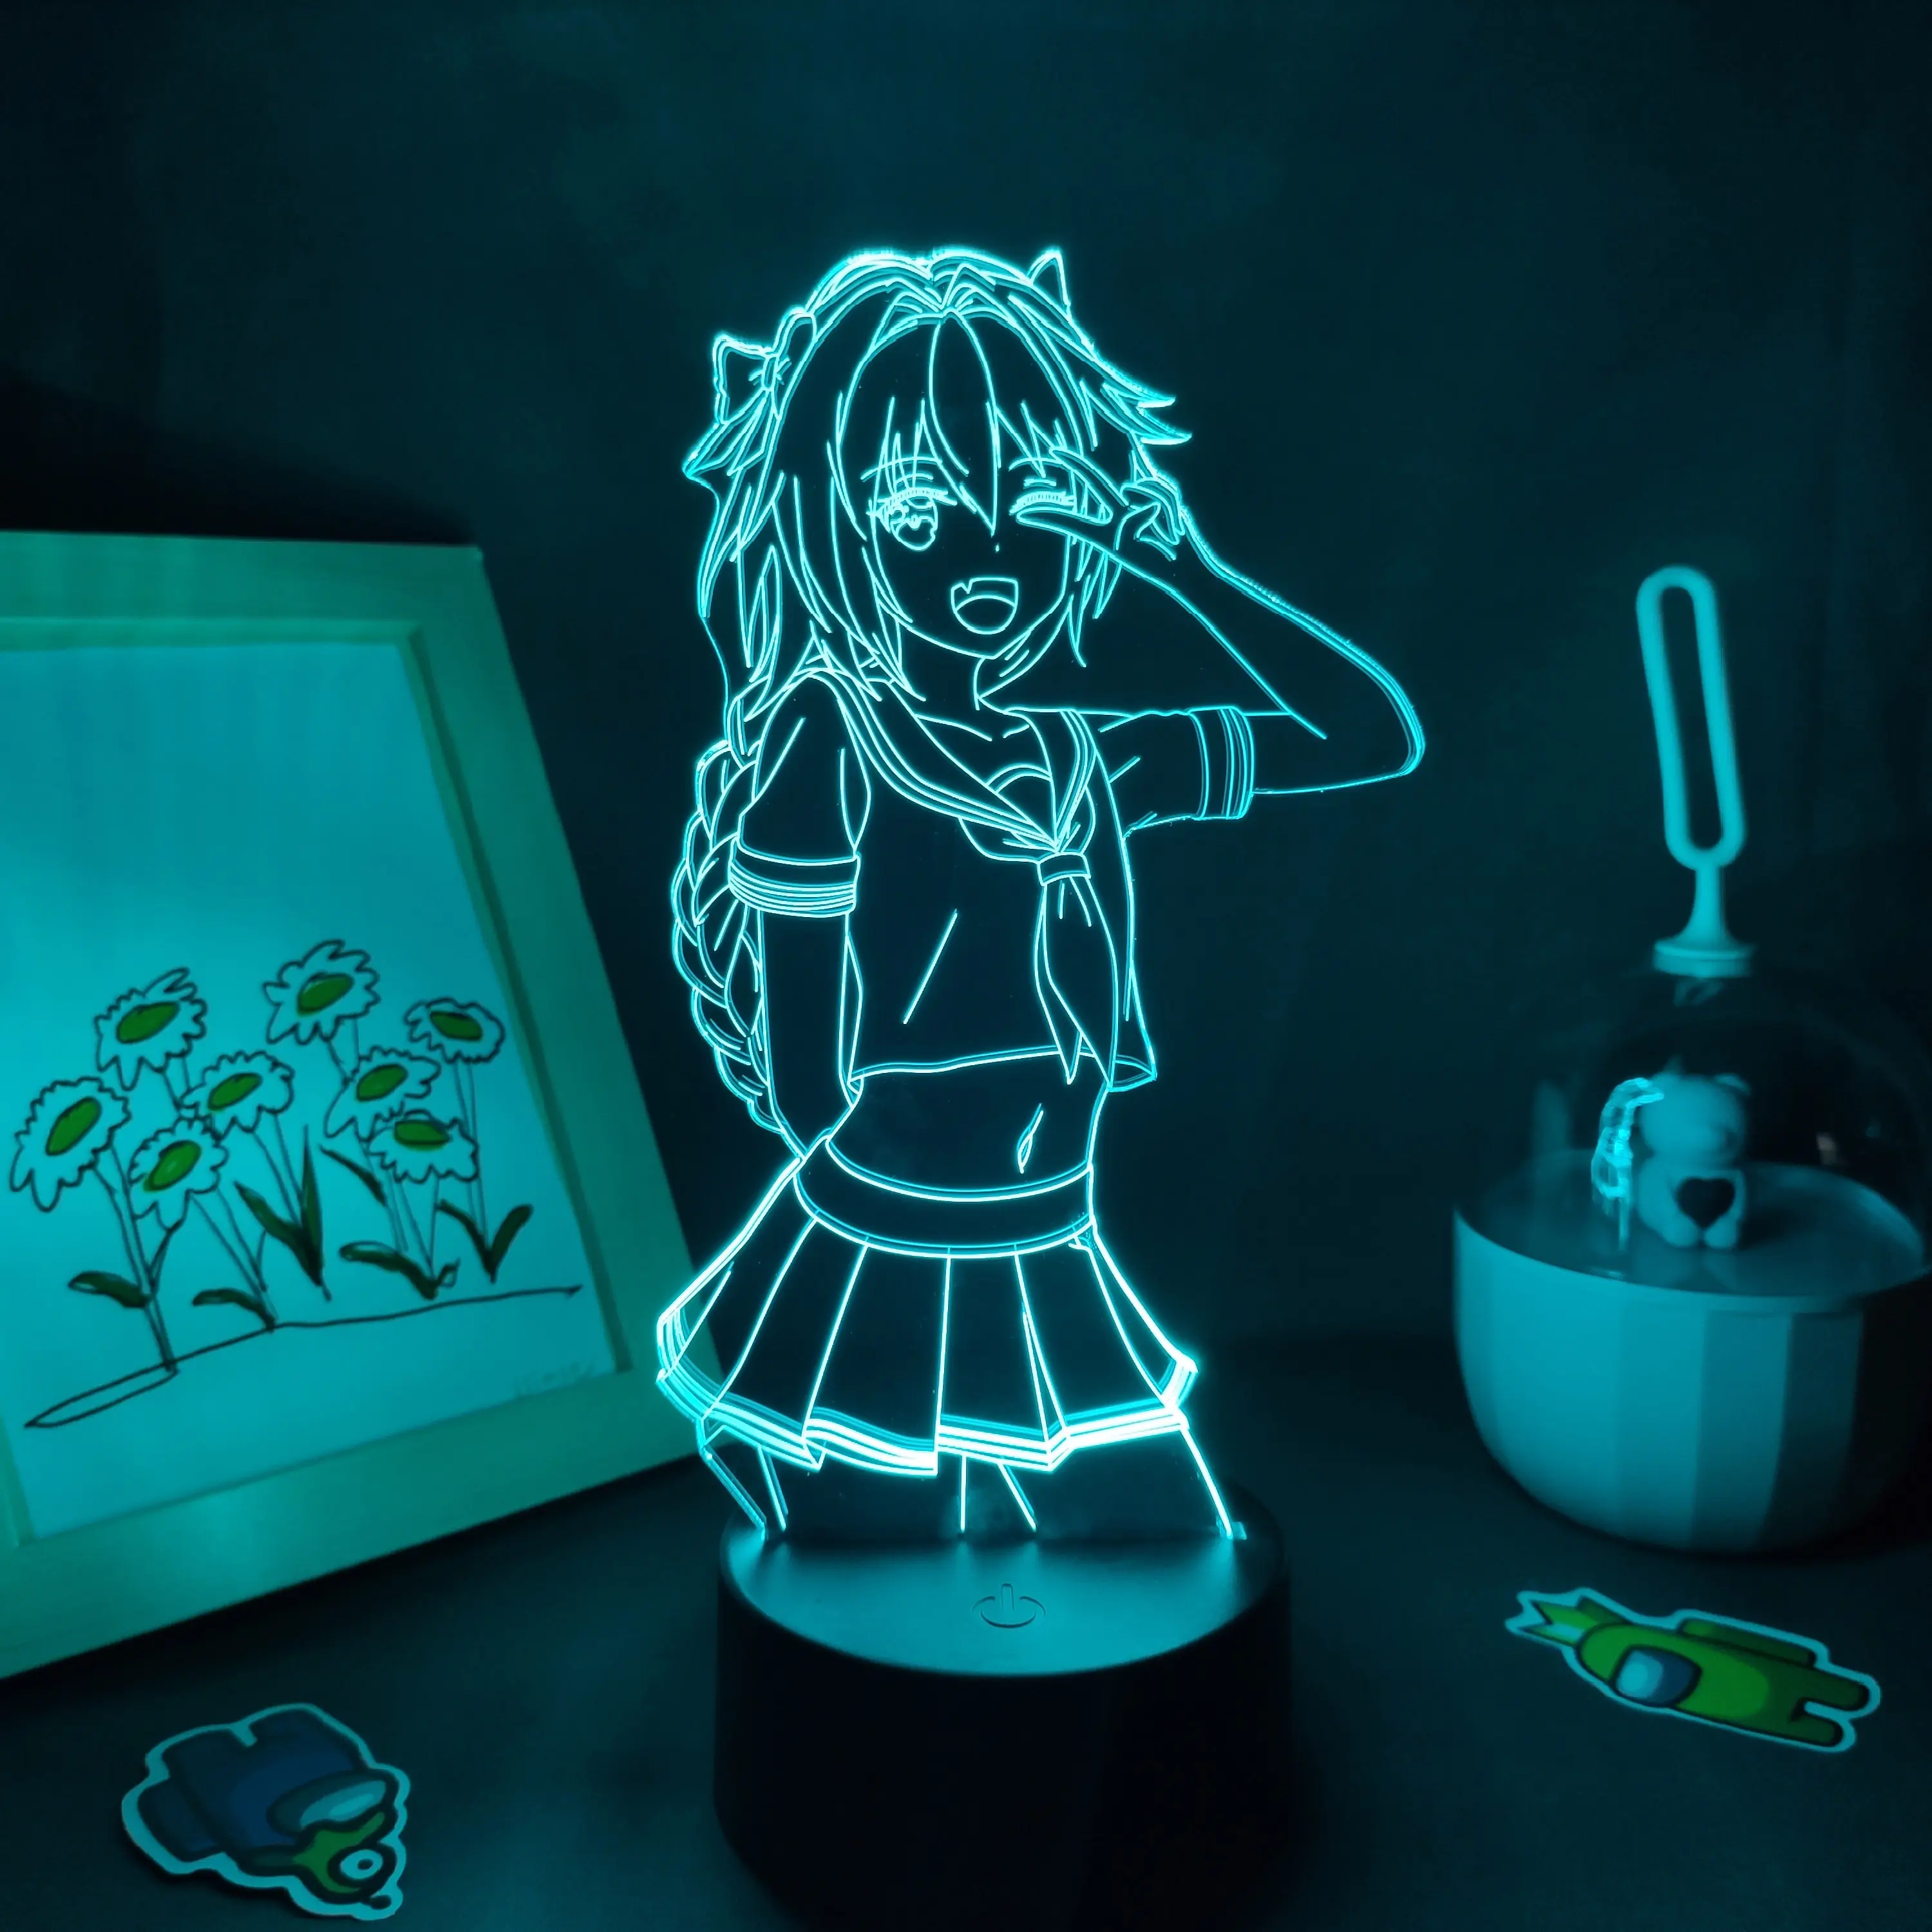 Fate Apocrypha Astolfo figura de Anime 3D lámparas Led RGB luces de noche de neón regalos para amigo colorido Manga Decoración de mesa de dormitorio